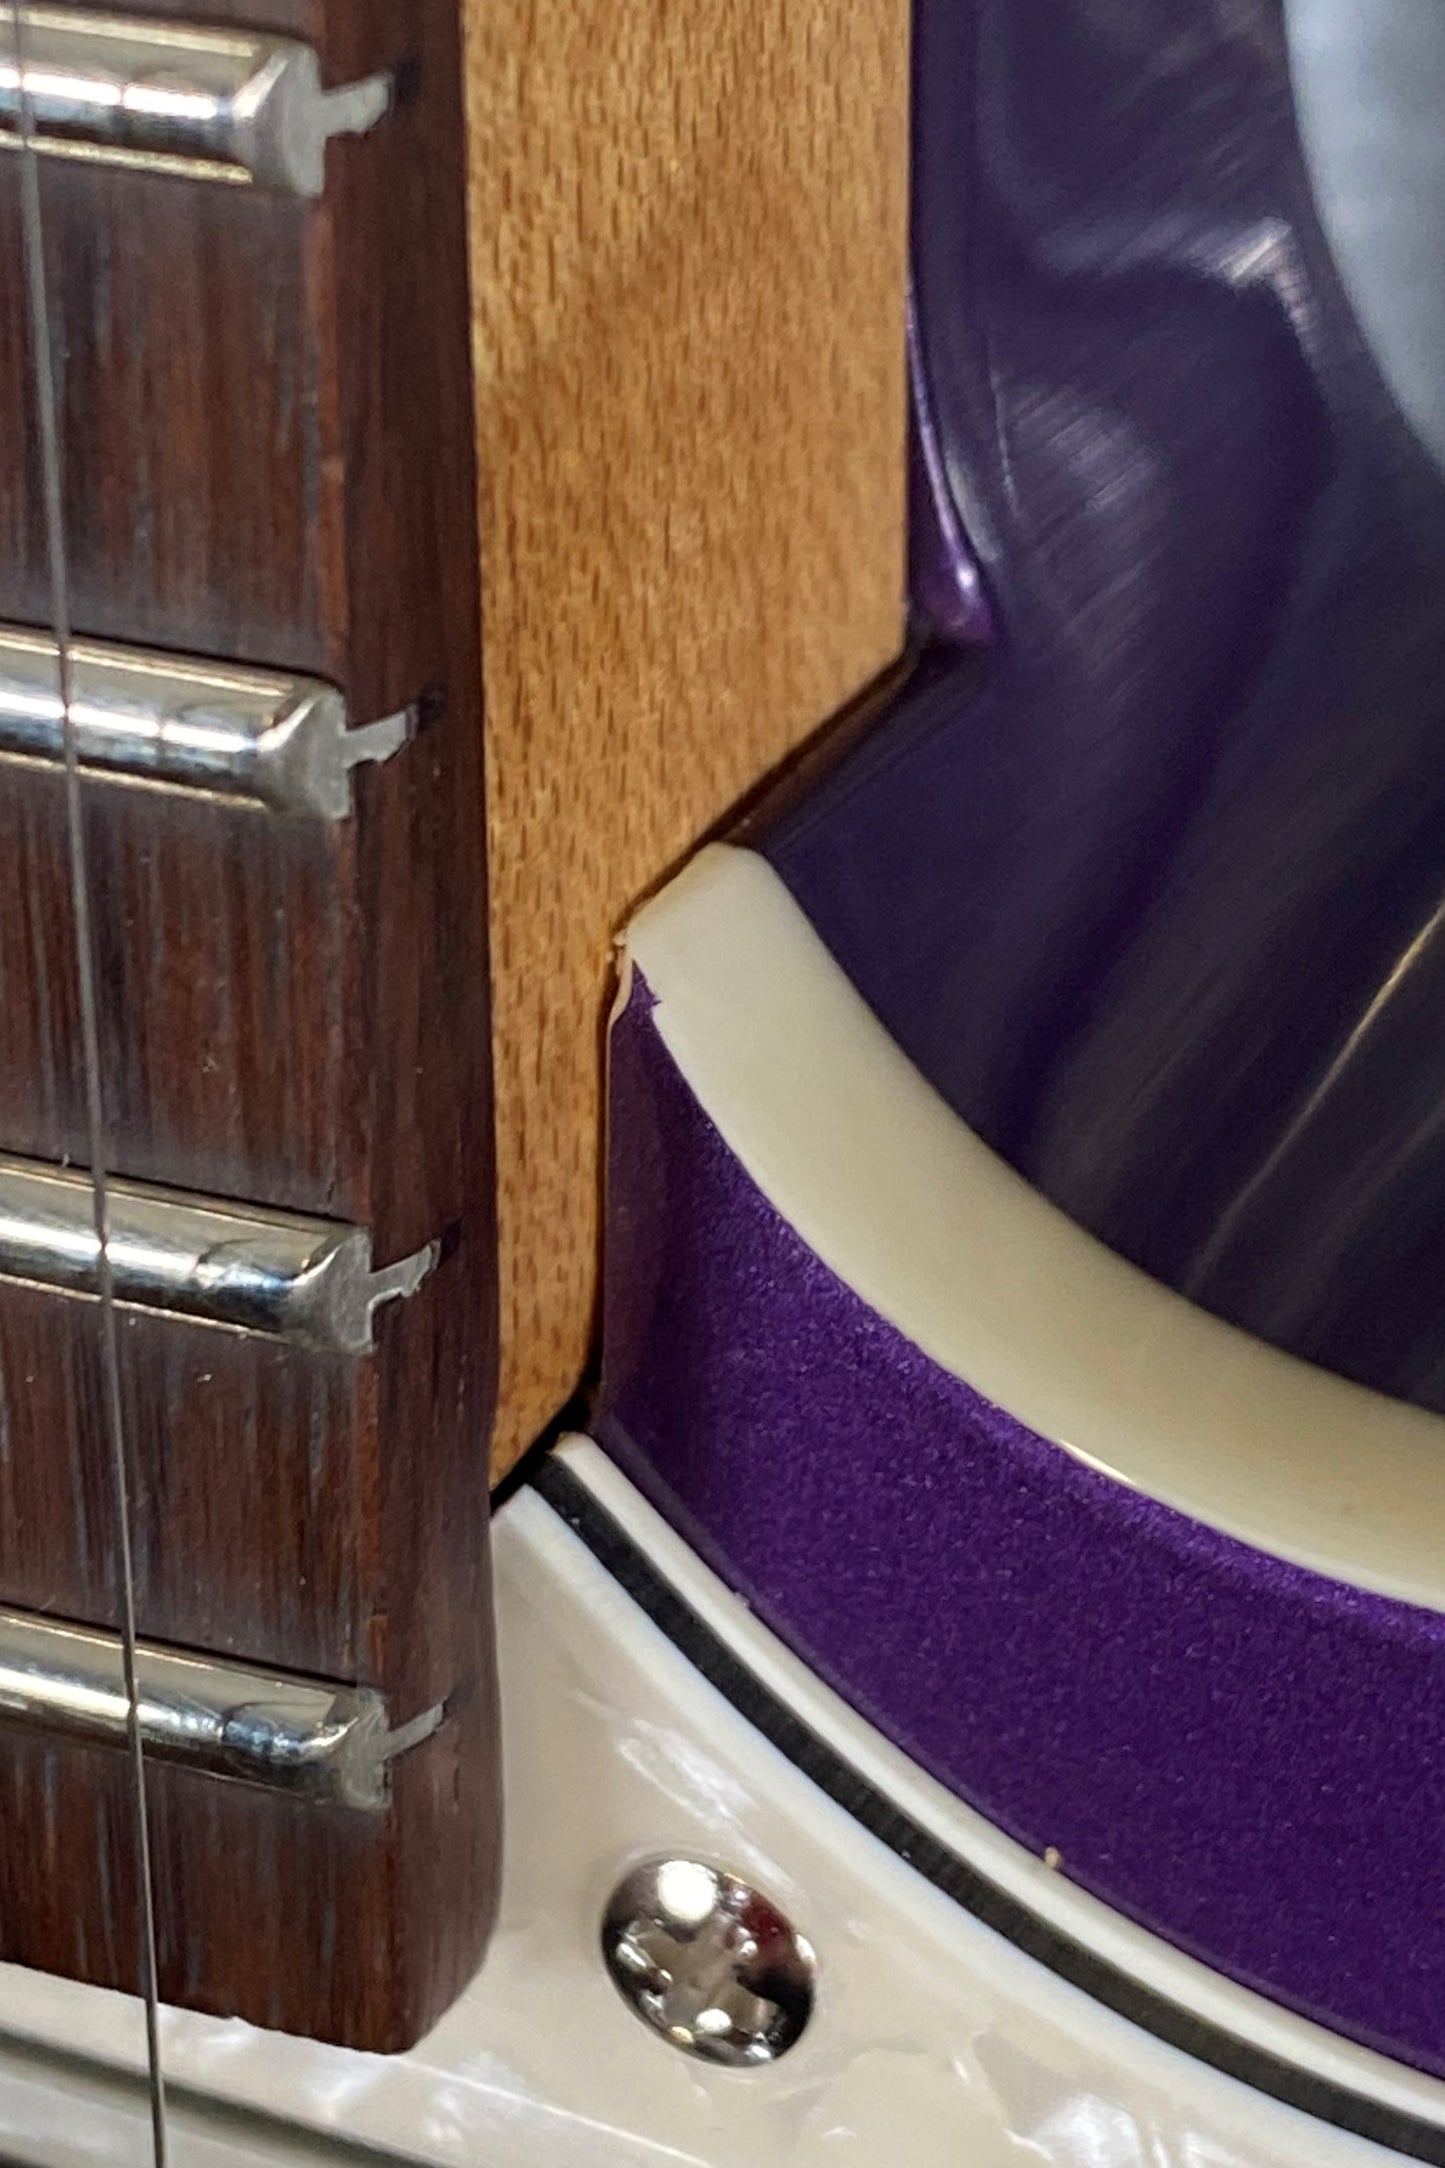 Reverend Cross Cut Italian Purple Guitar #1060 B Stock